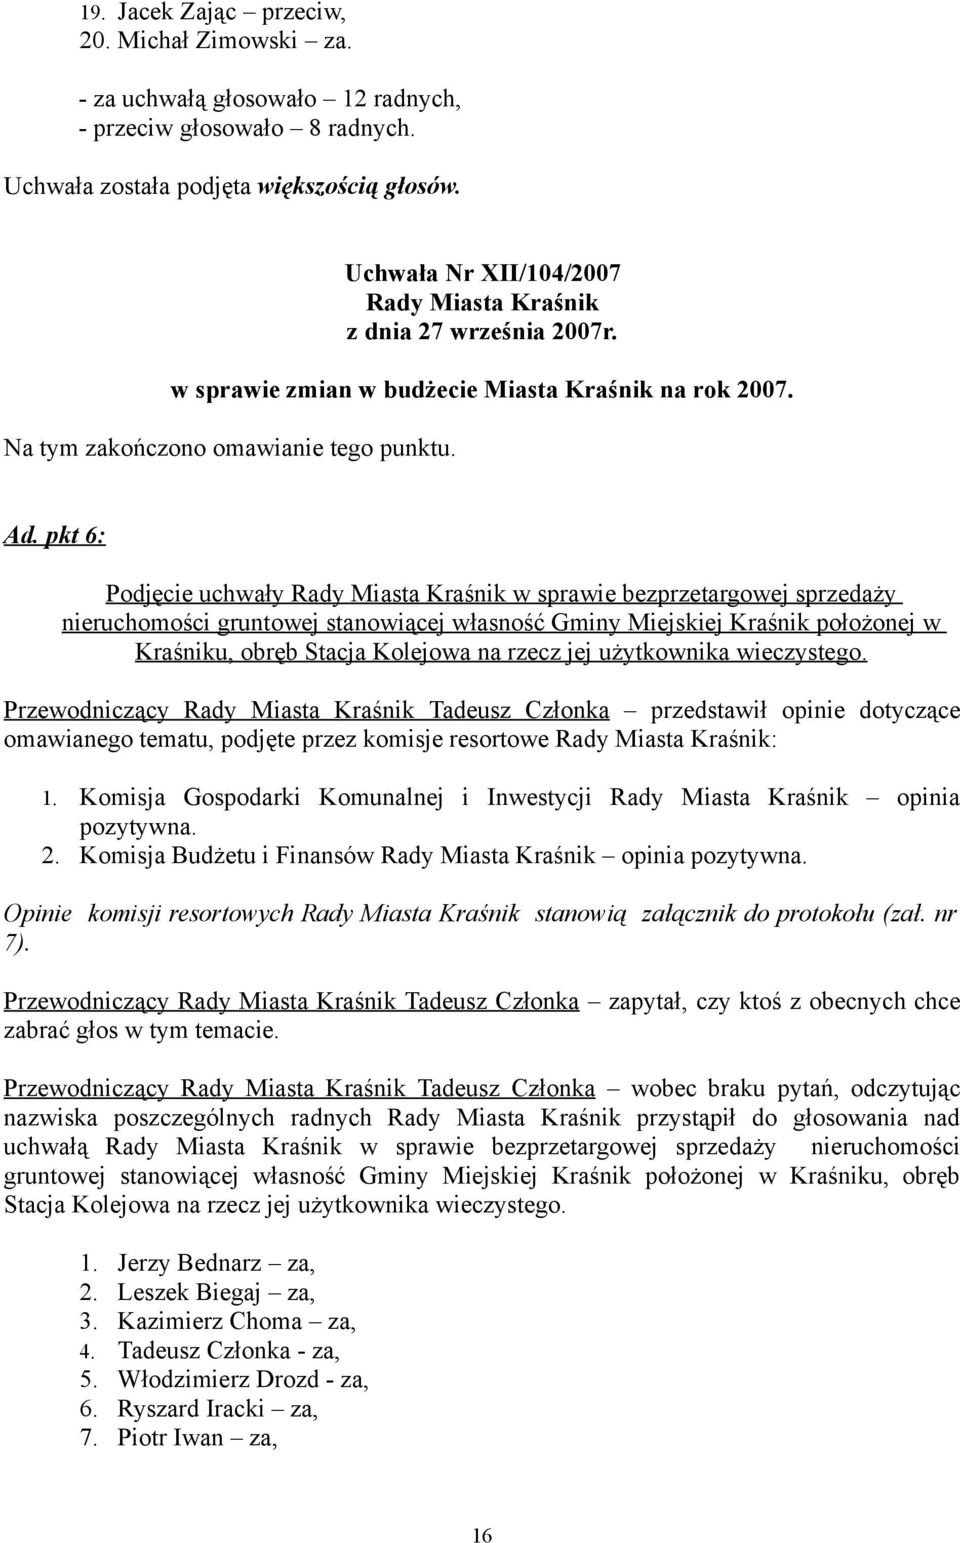 pkt 6: Podjęcie uchwały Rady Miasta Kraśnik w sprawie bezprzetargowej sprzedaży nieruchomości gruntowej stanowiącej własność Gminy Miejskiej Kraśnik położonej w Kraśniku, obręb Stacja Kolejowa na